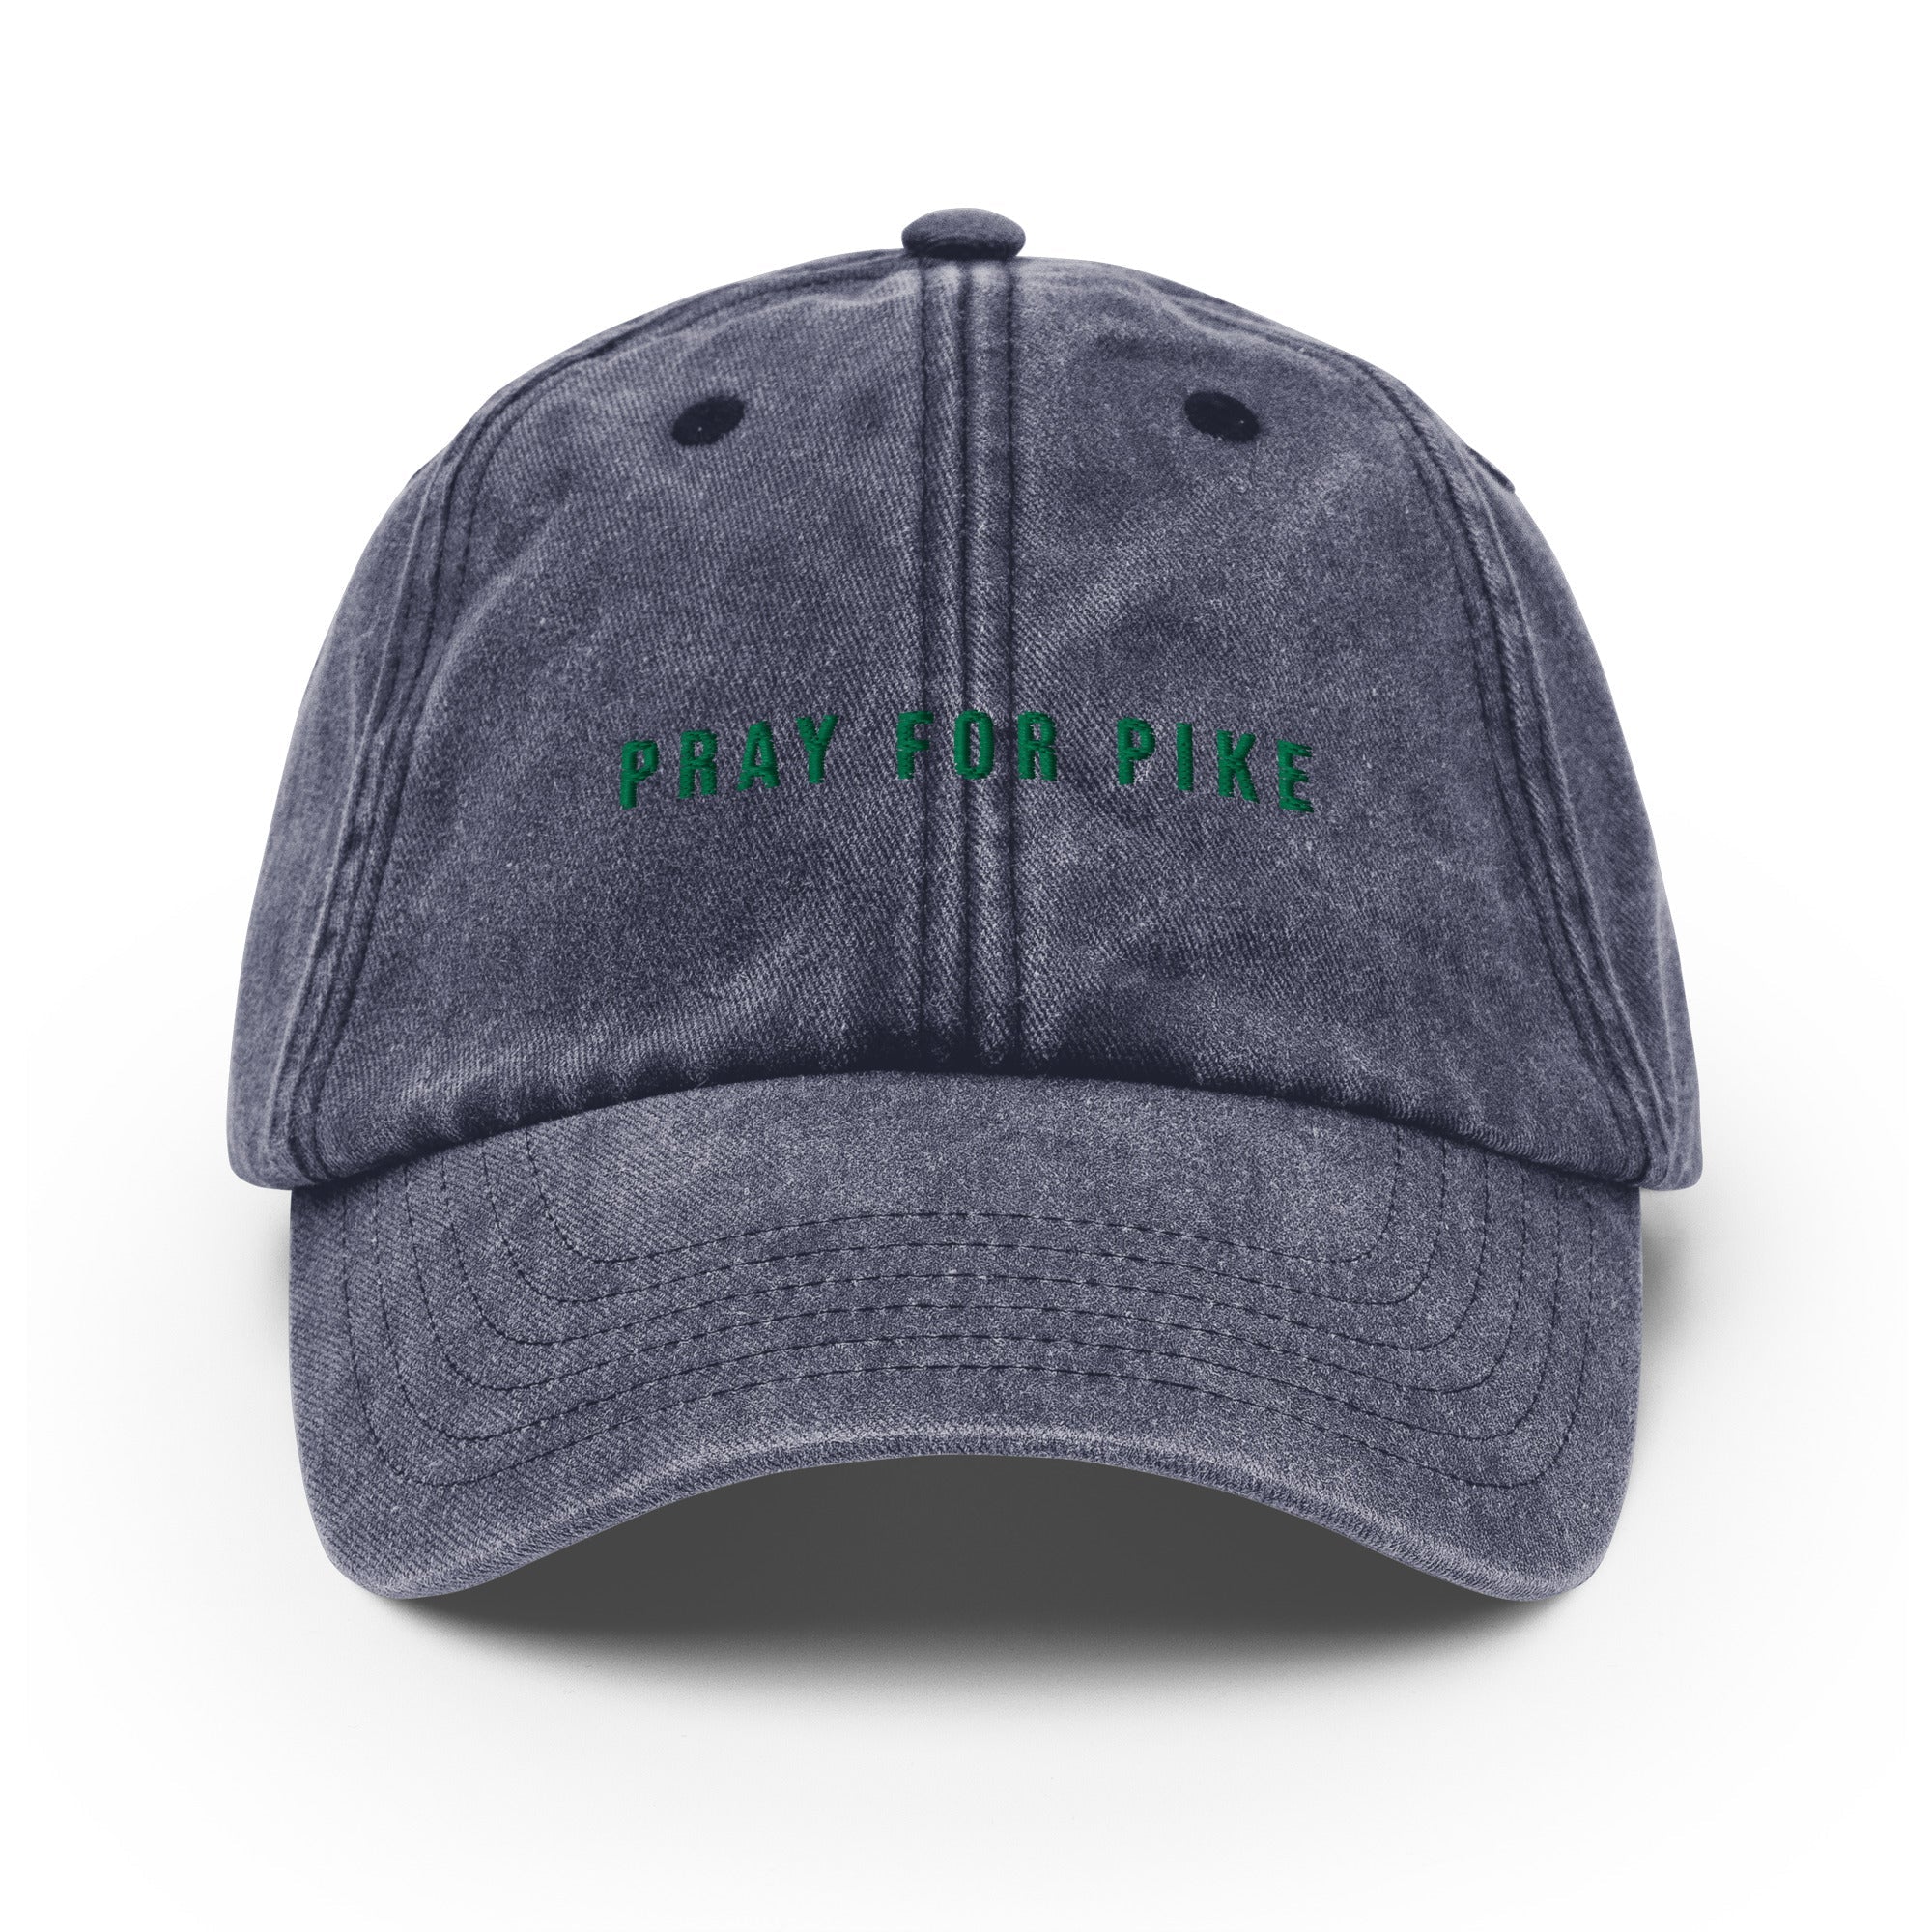 Pray for pike Vintage Hat - Oddhook